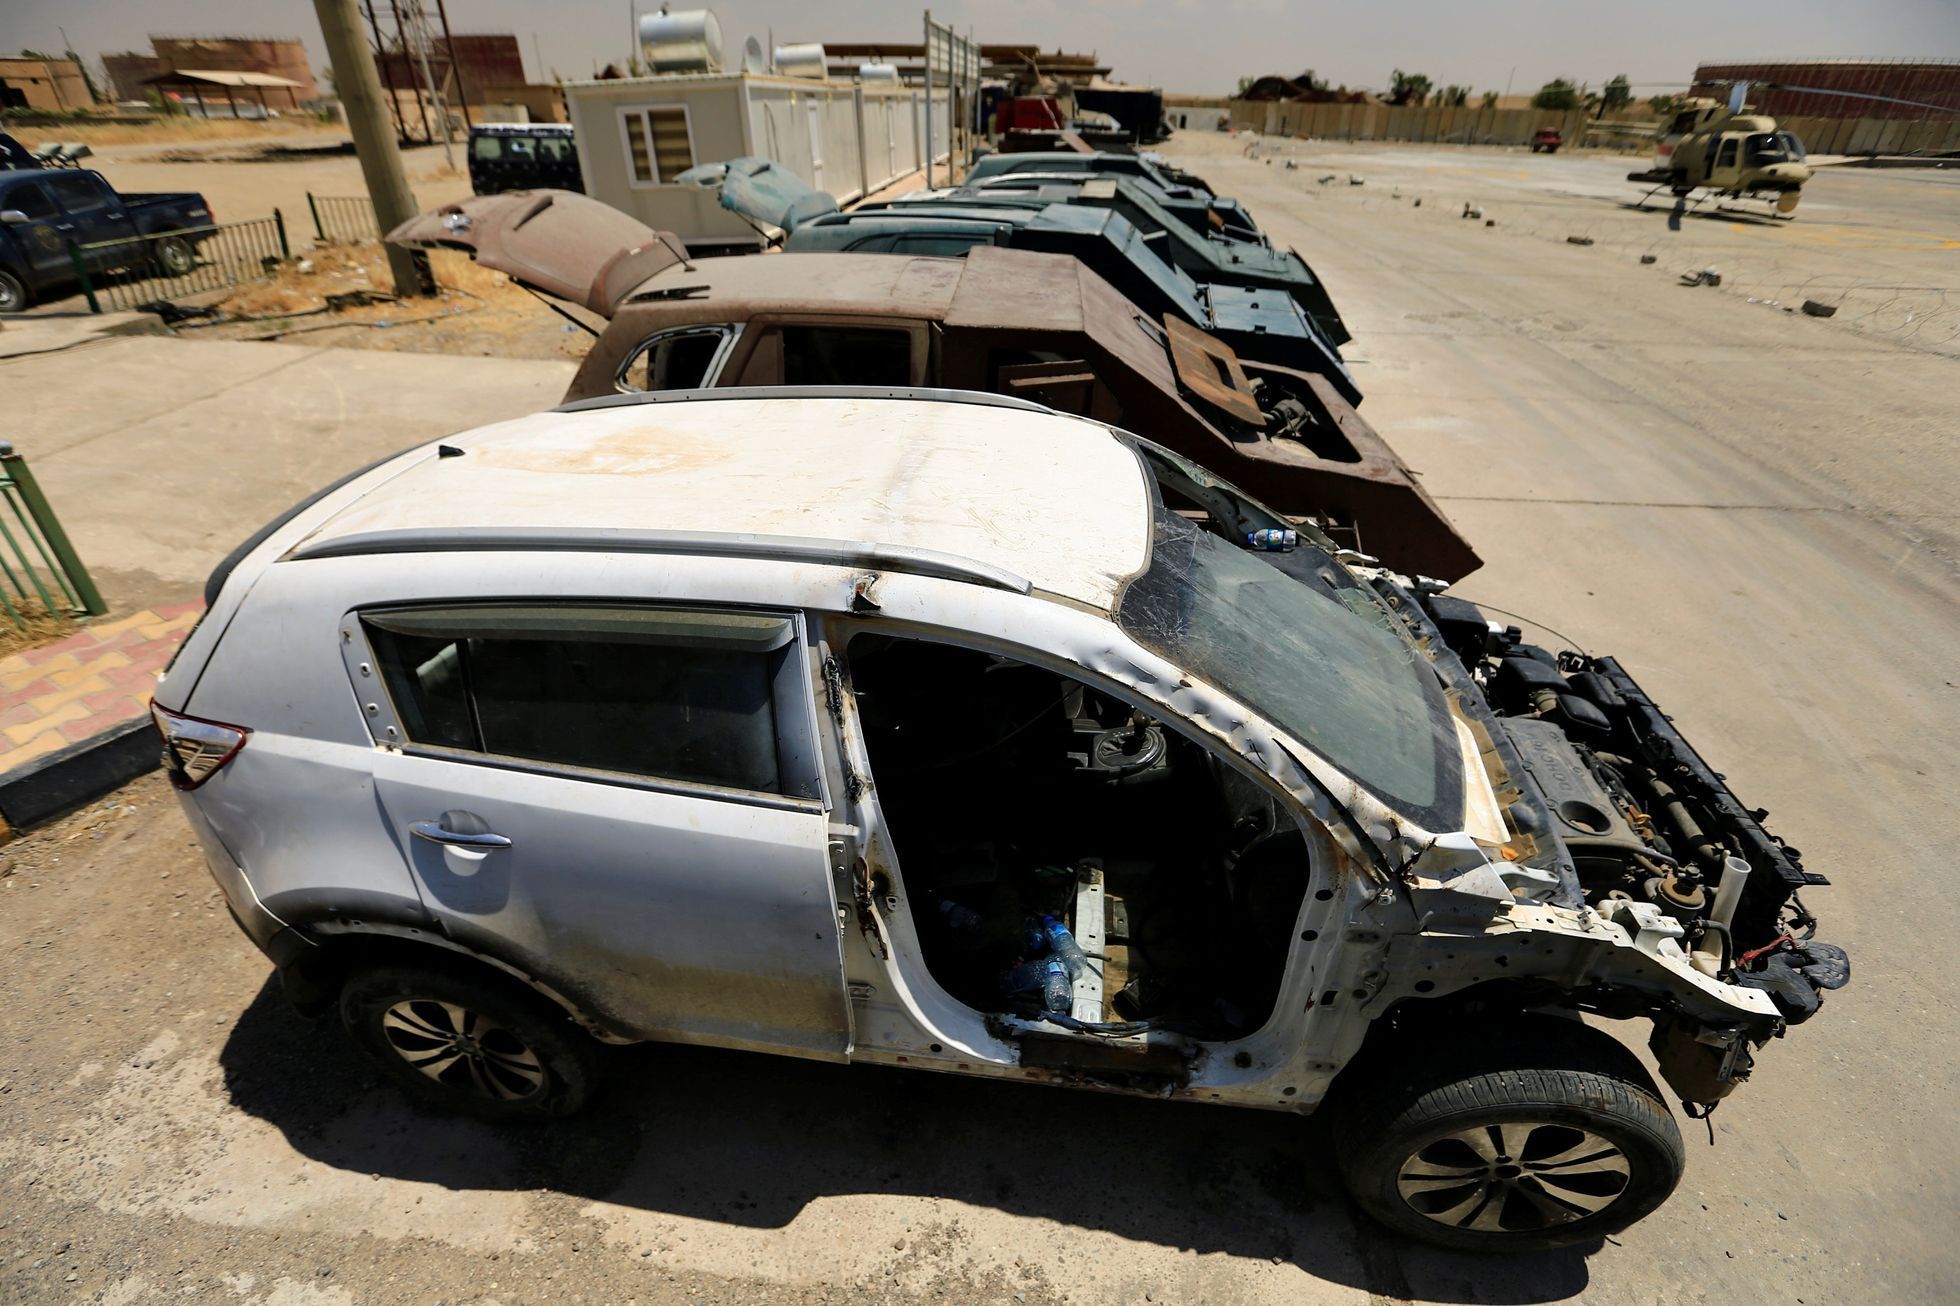 Sebevražedná auta jako z Šíleného Maxe. Největší chlouby Islámského státu